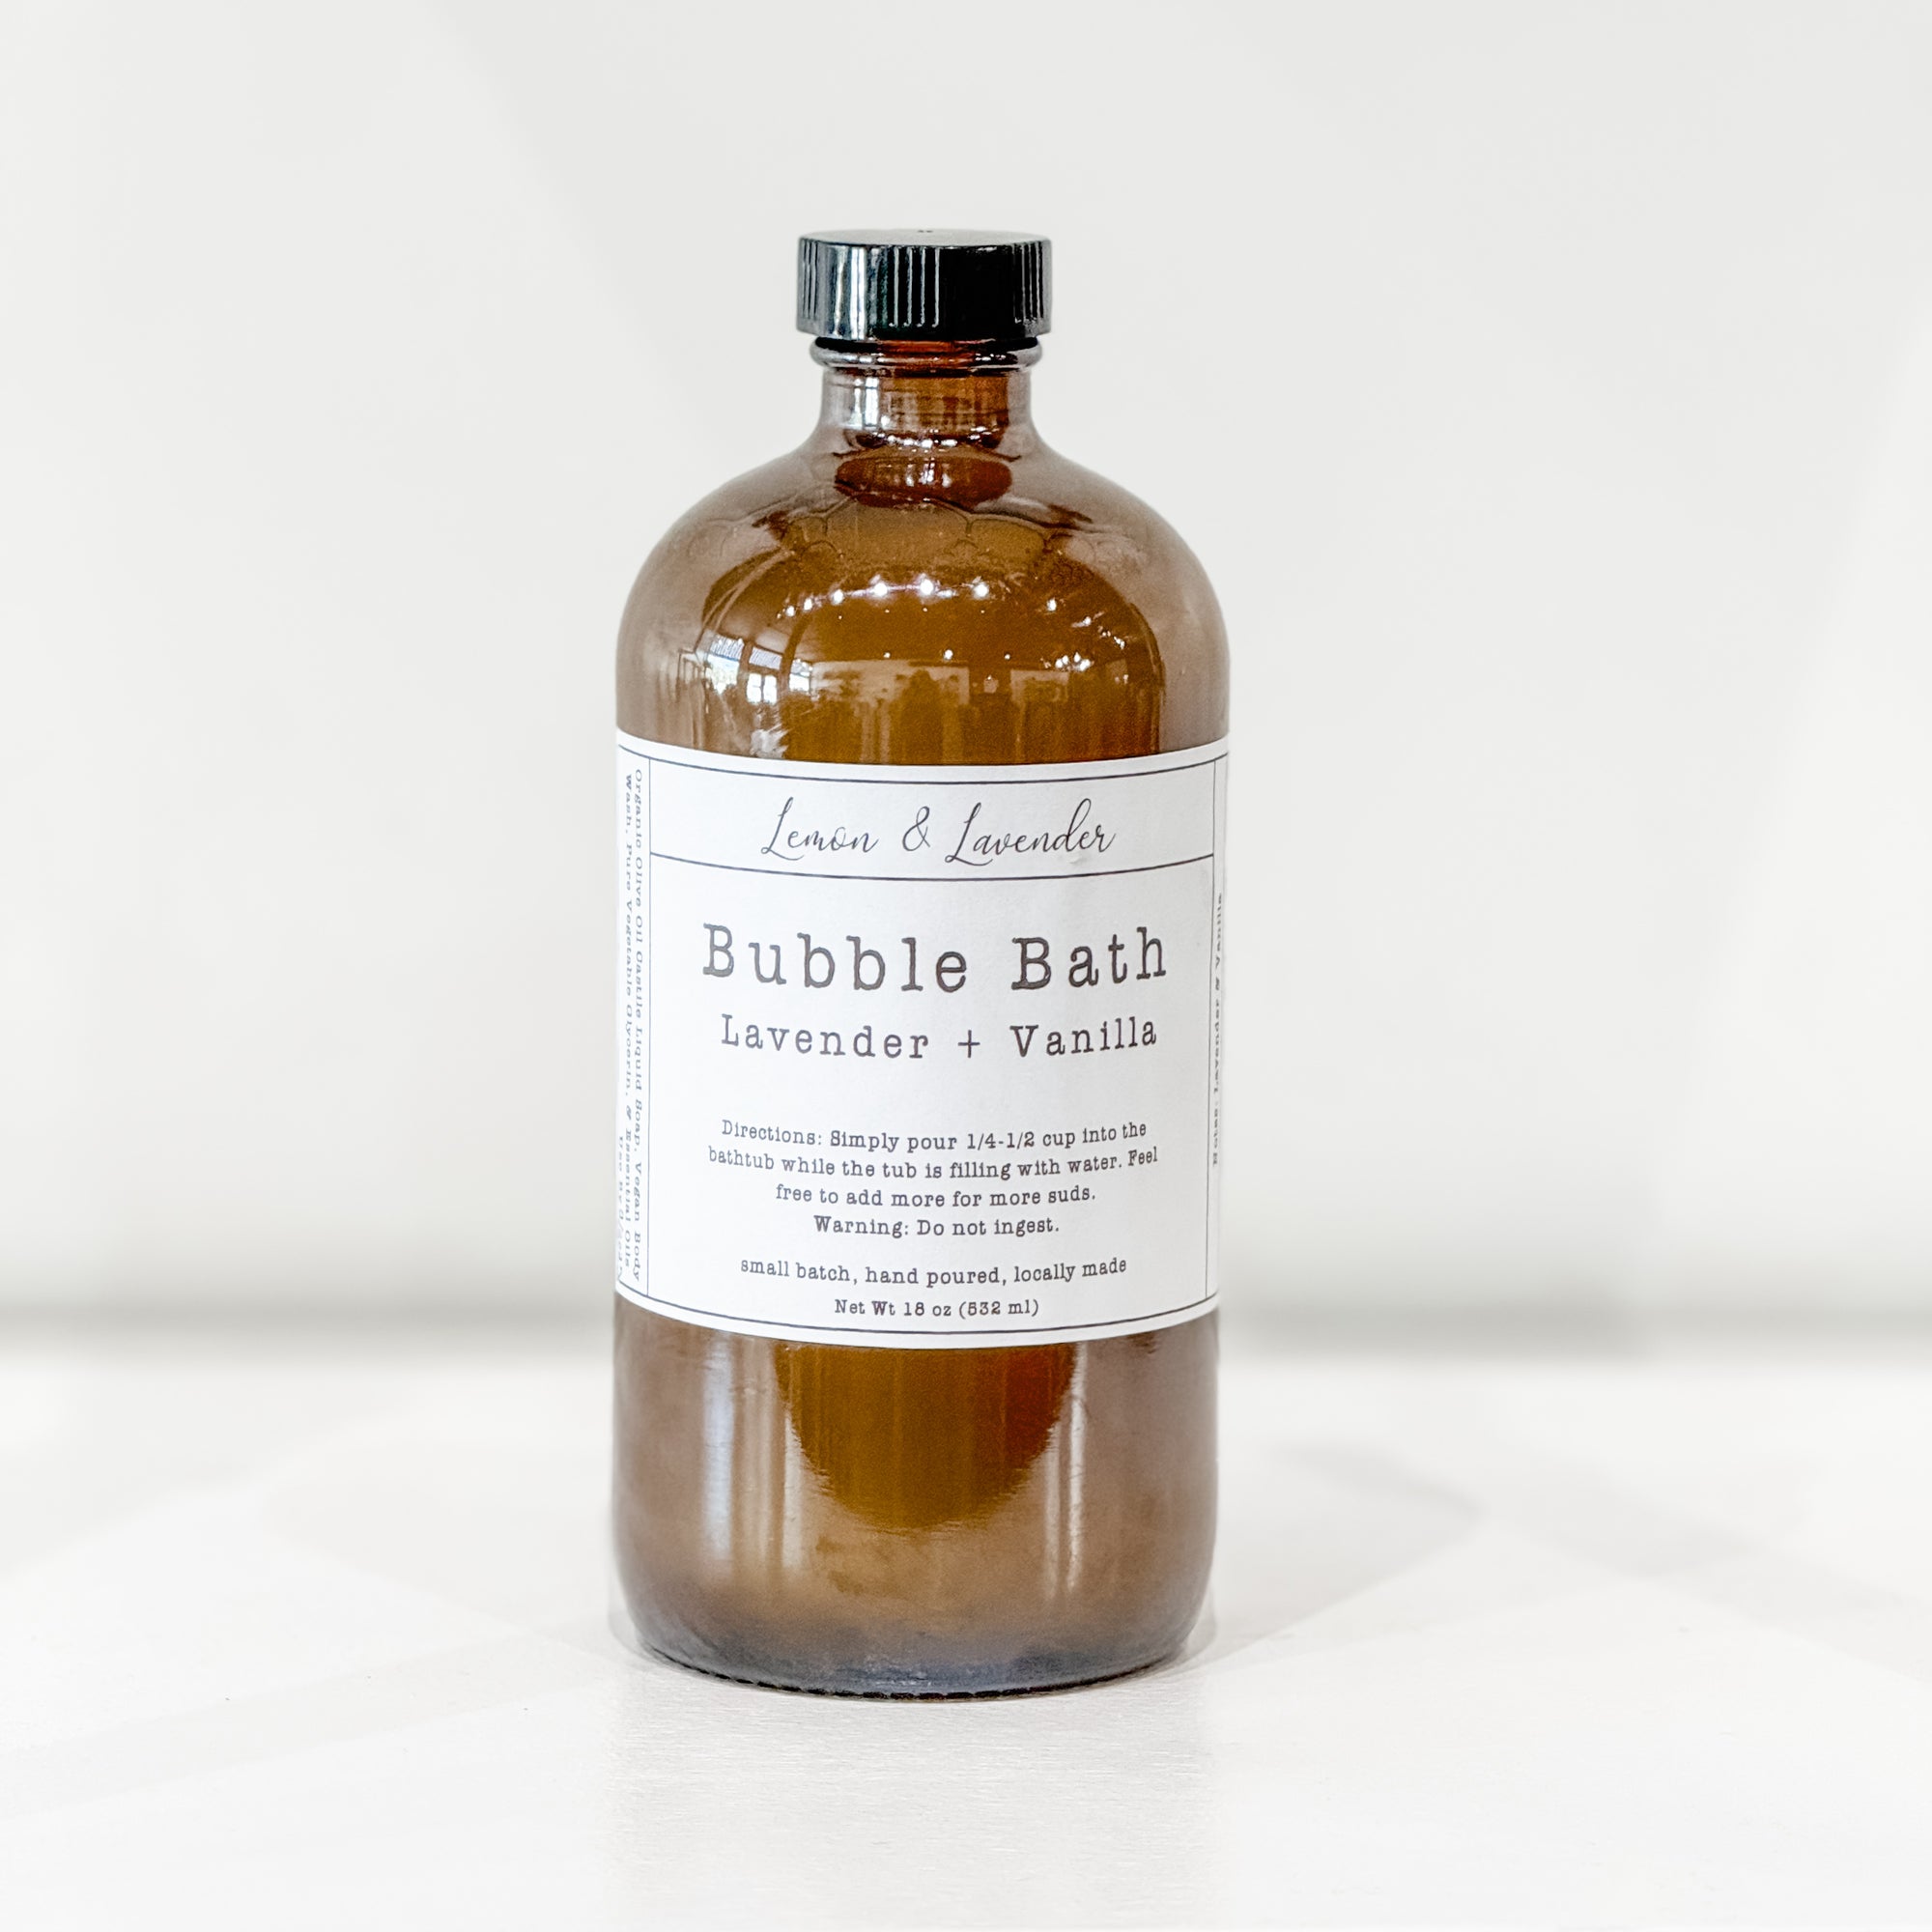 All-Natural Bubble Bath - Small Batch by Lemon & Lavender - Lemon & Lavender